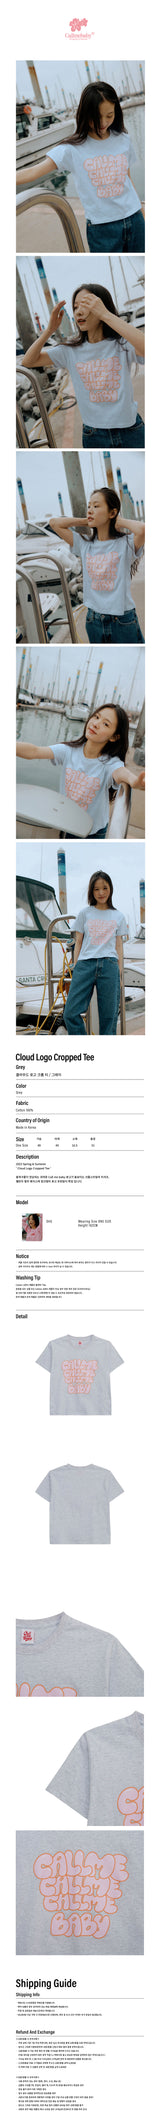 クラウドロゴクロップドTシャツ / Cloud Logo Cropped Tee